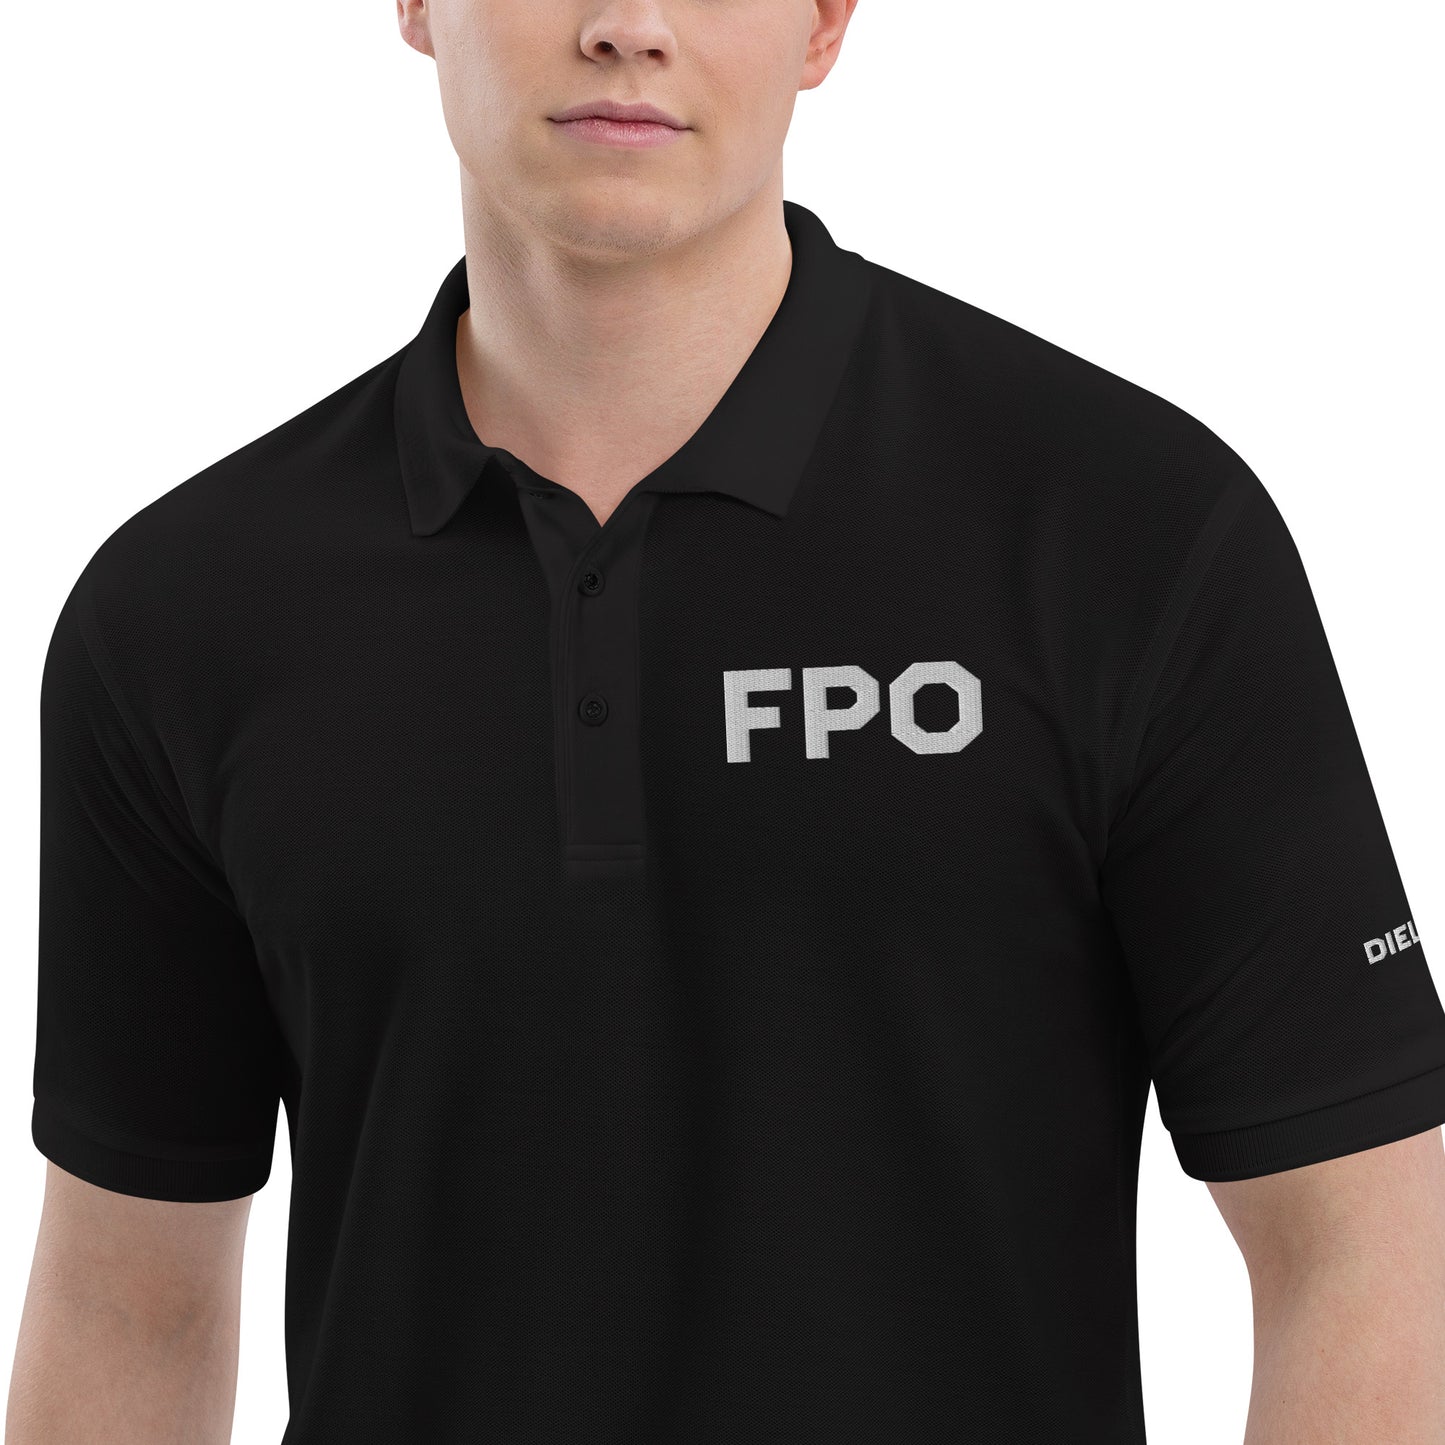 FPO Embroidered Men's Premium Polo